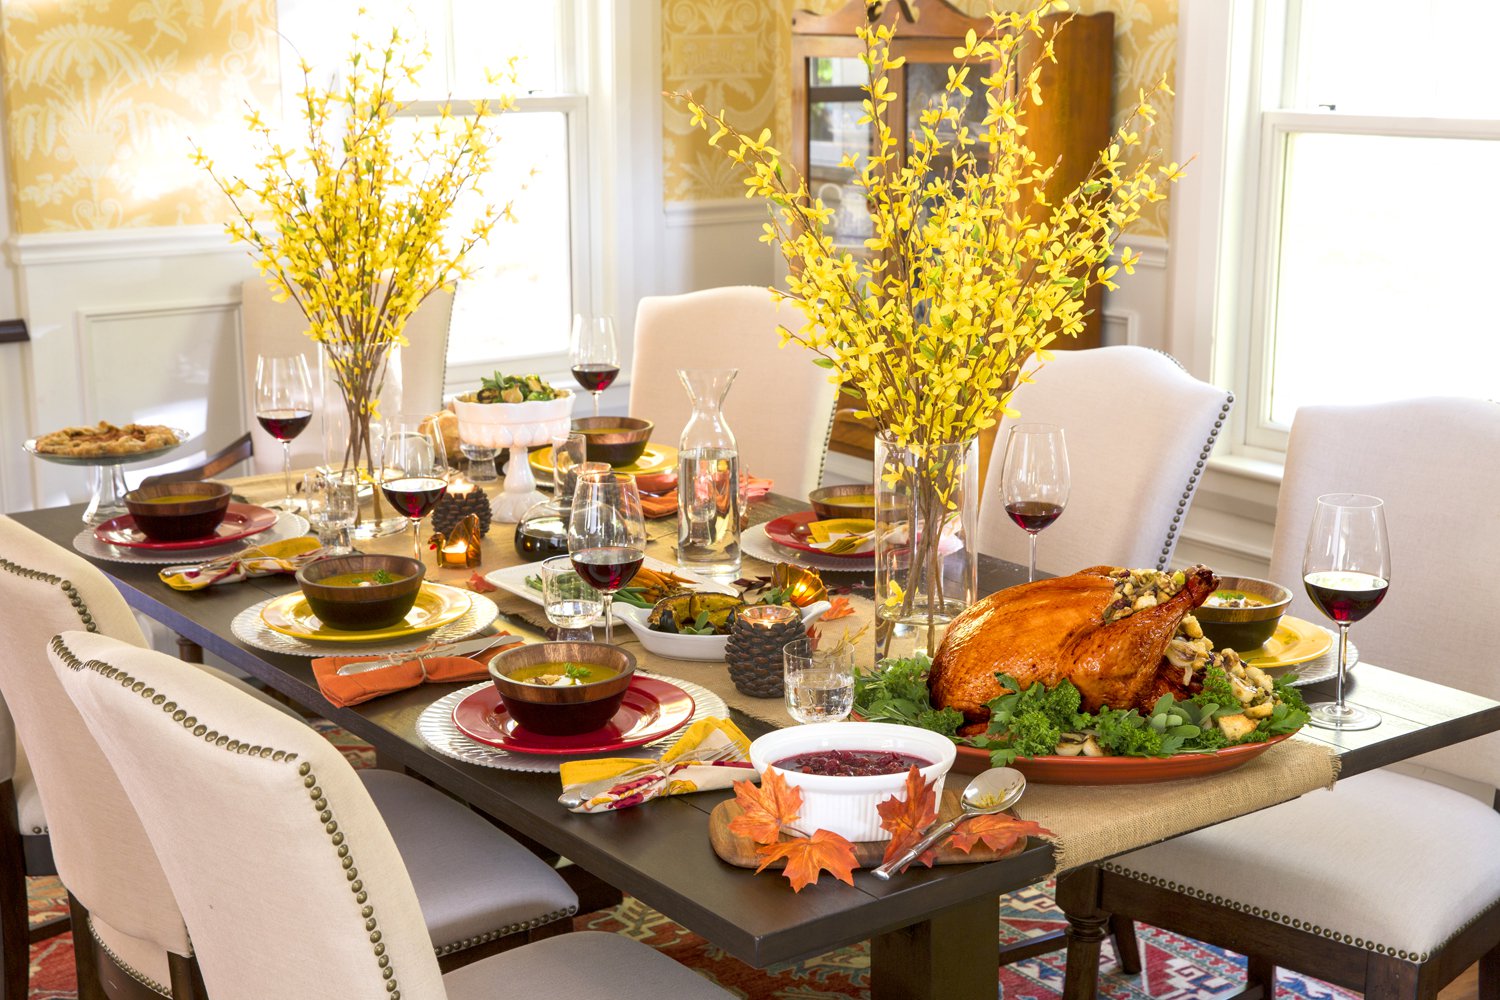 Thanksgiving Dinner table setting